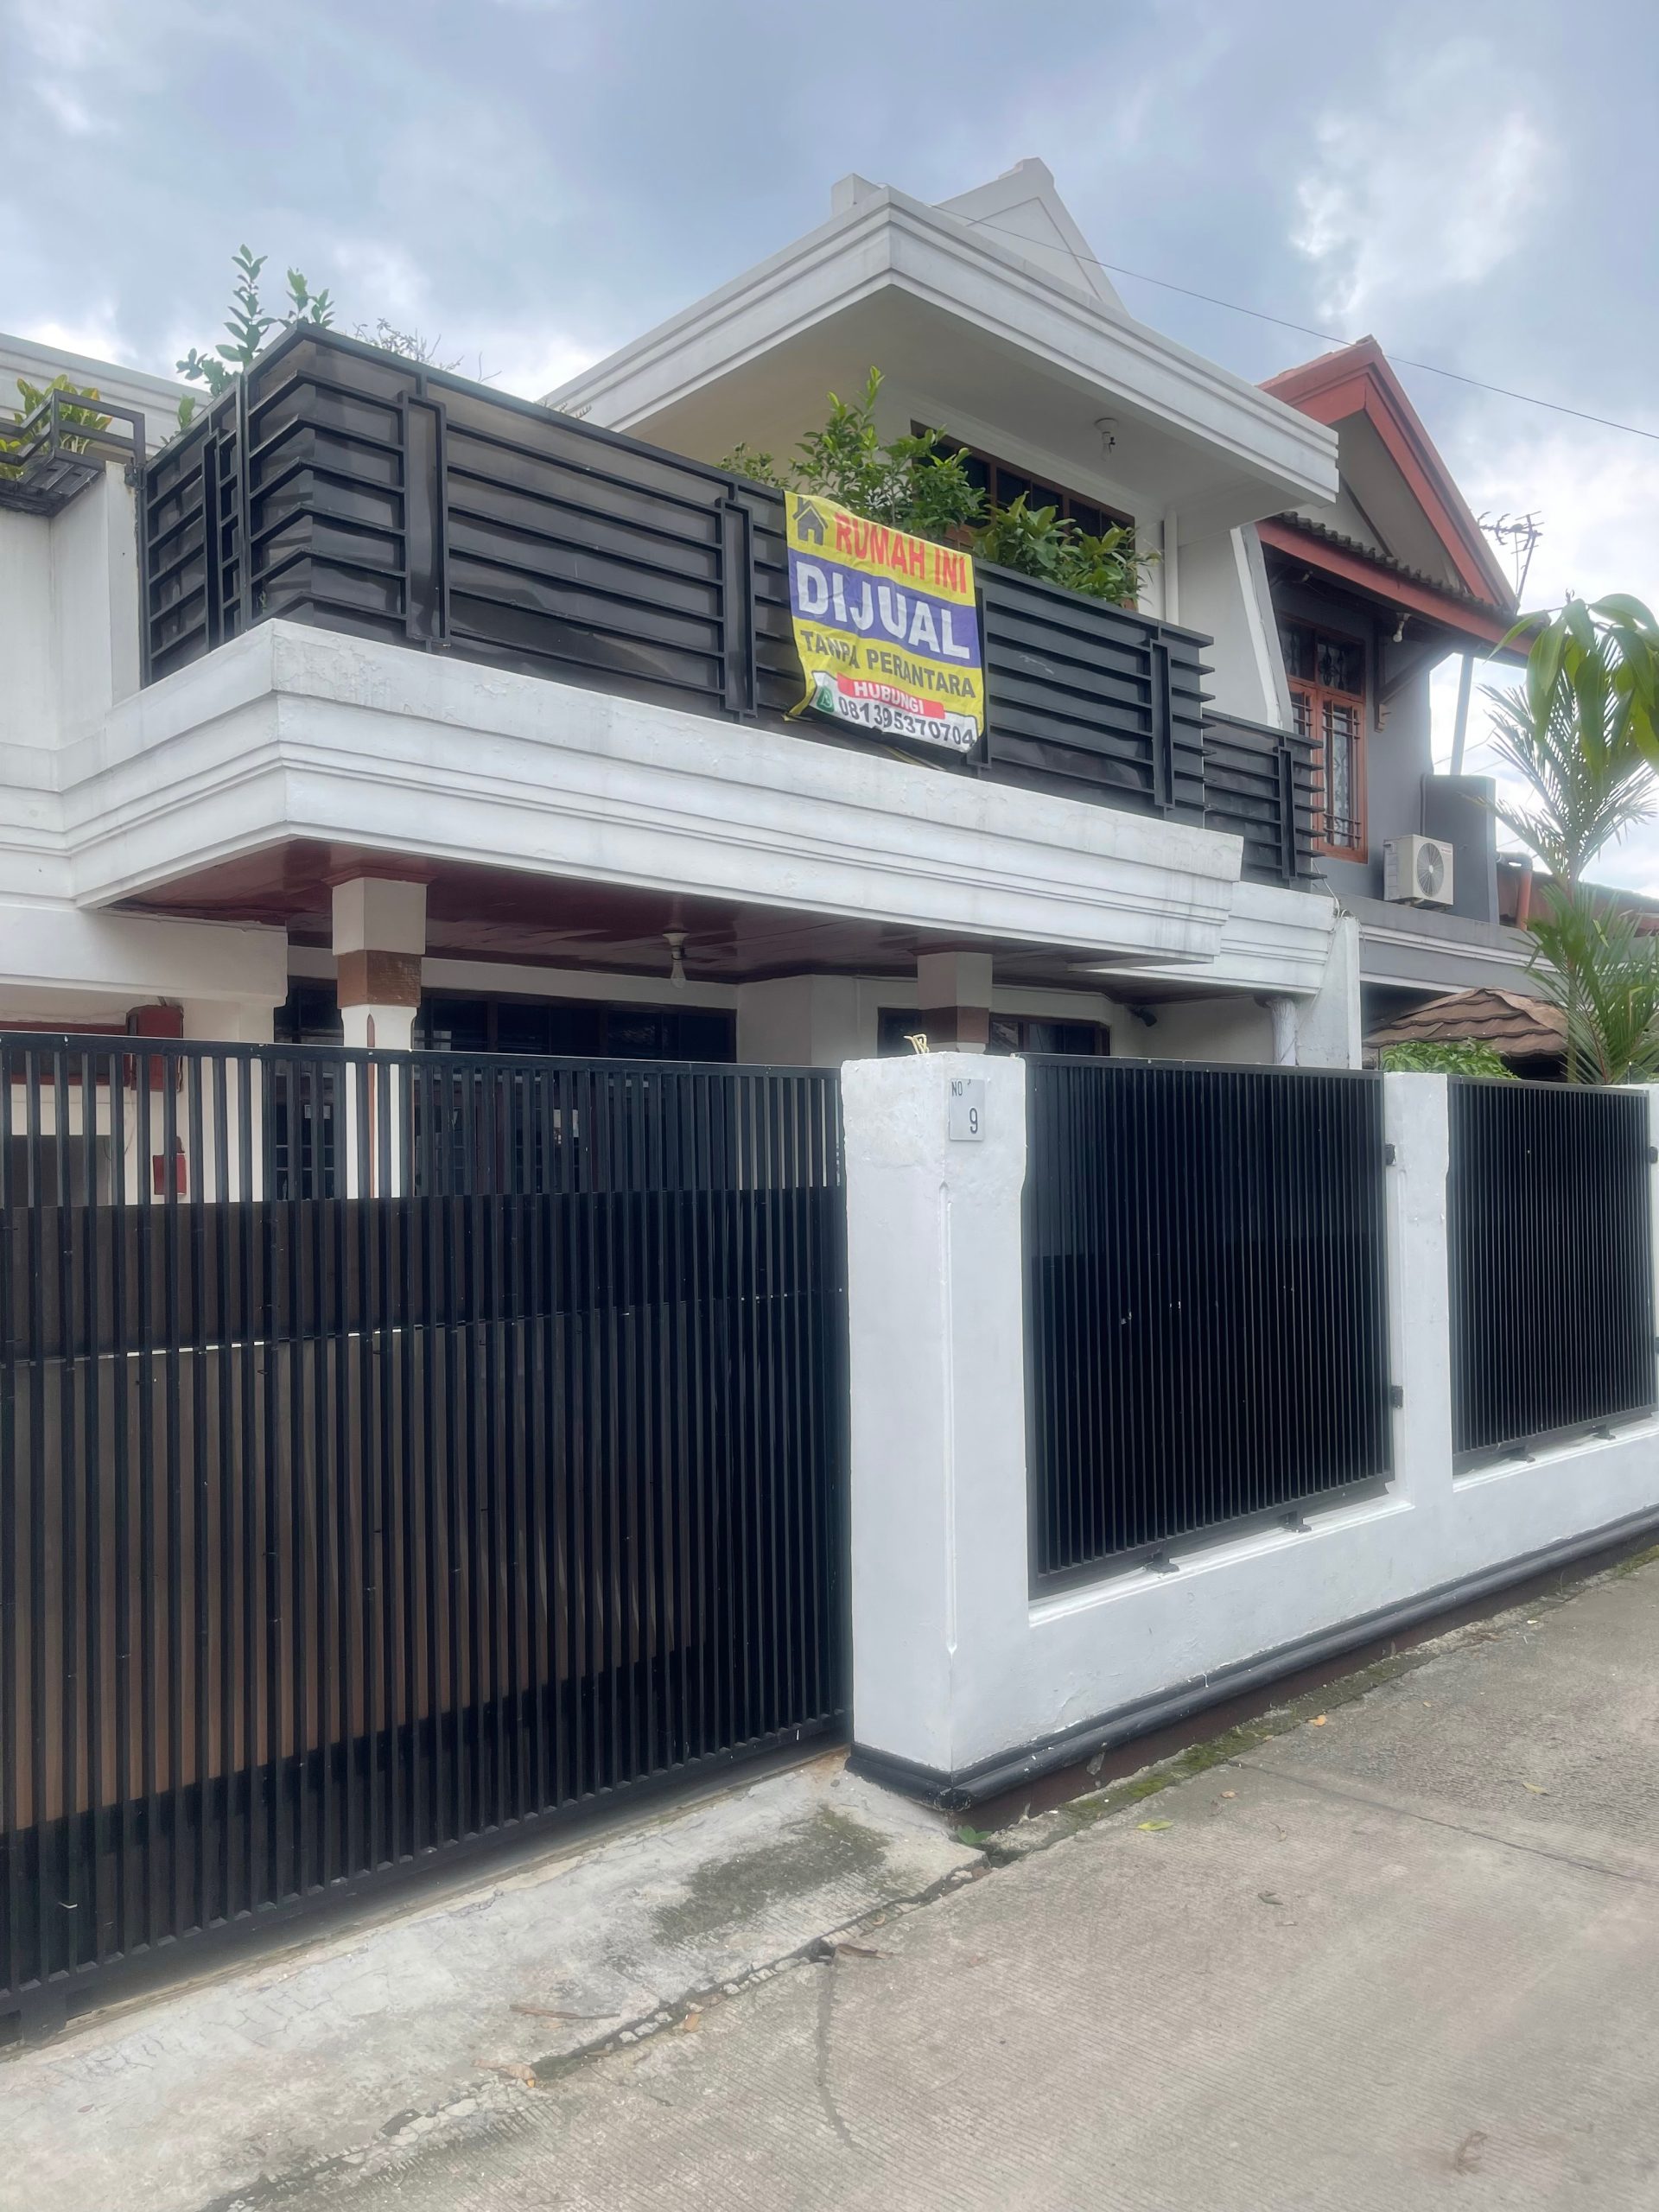 Jual Rumah 2 Lantai di Margacinta Buahbatu Bandung Dekat Kantor Bersama SAMSAT Soekarno Hatta Kota Bandung